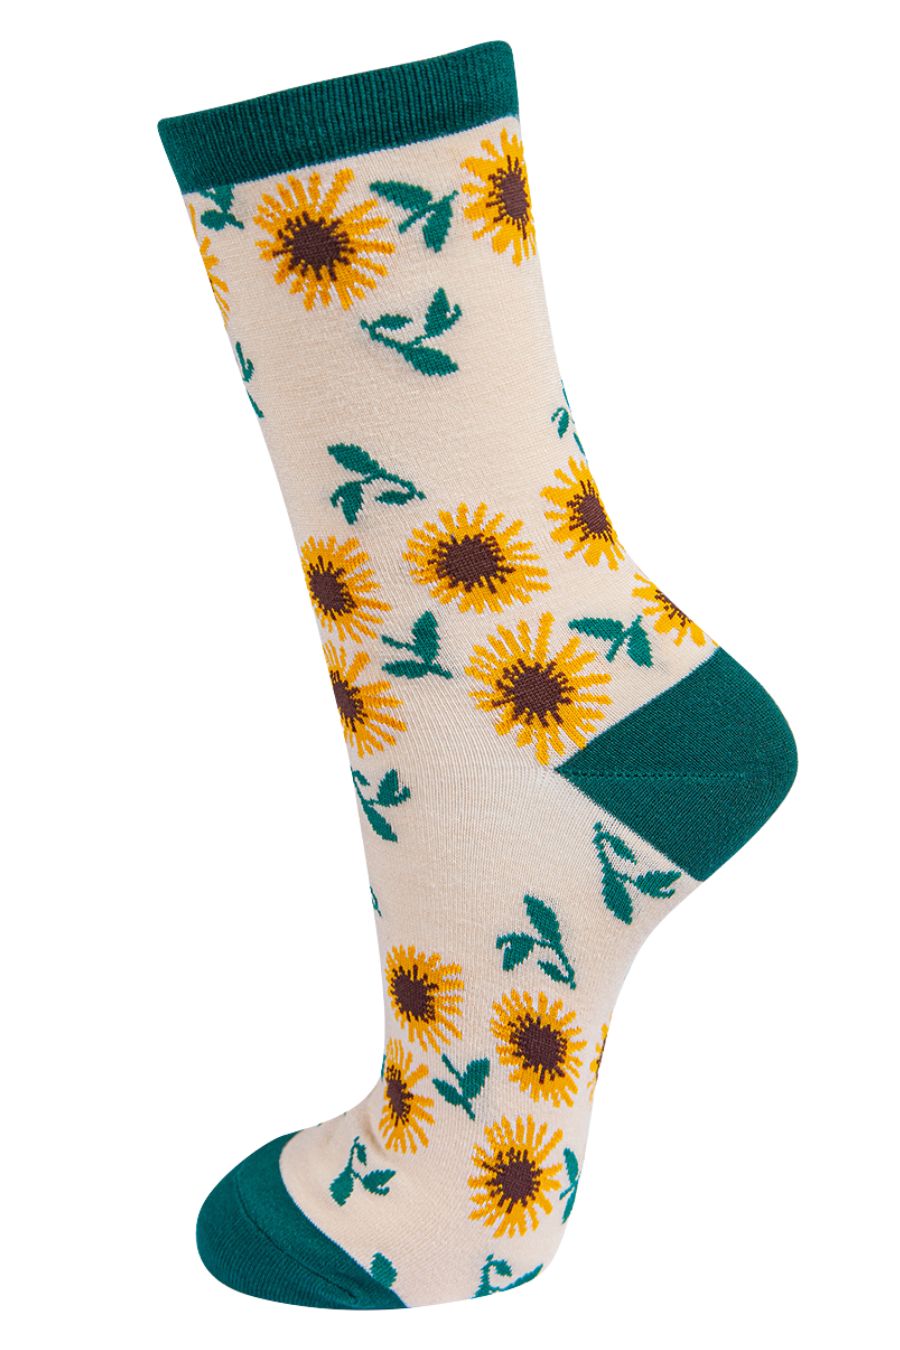 Womens Bamboo Socks Sunflower Floral Print Ankle Socks Green